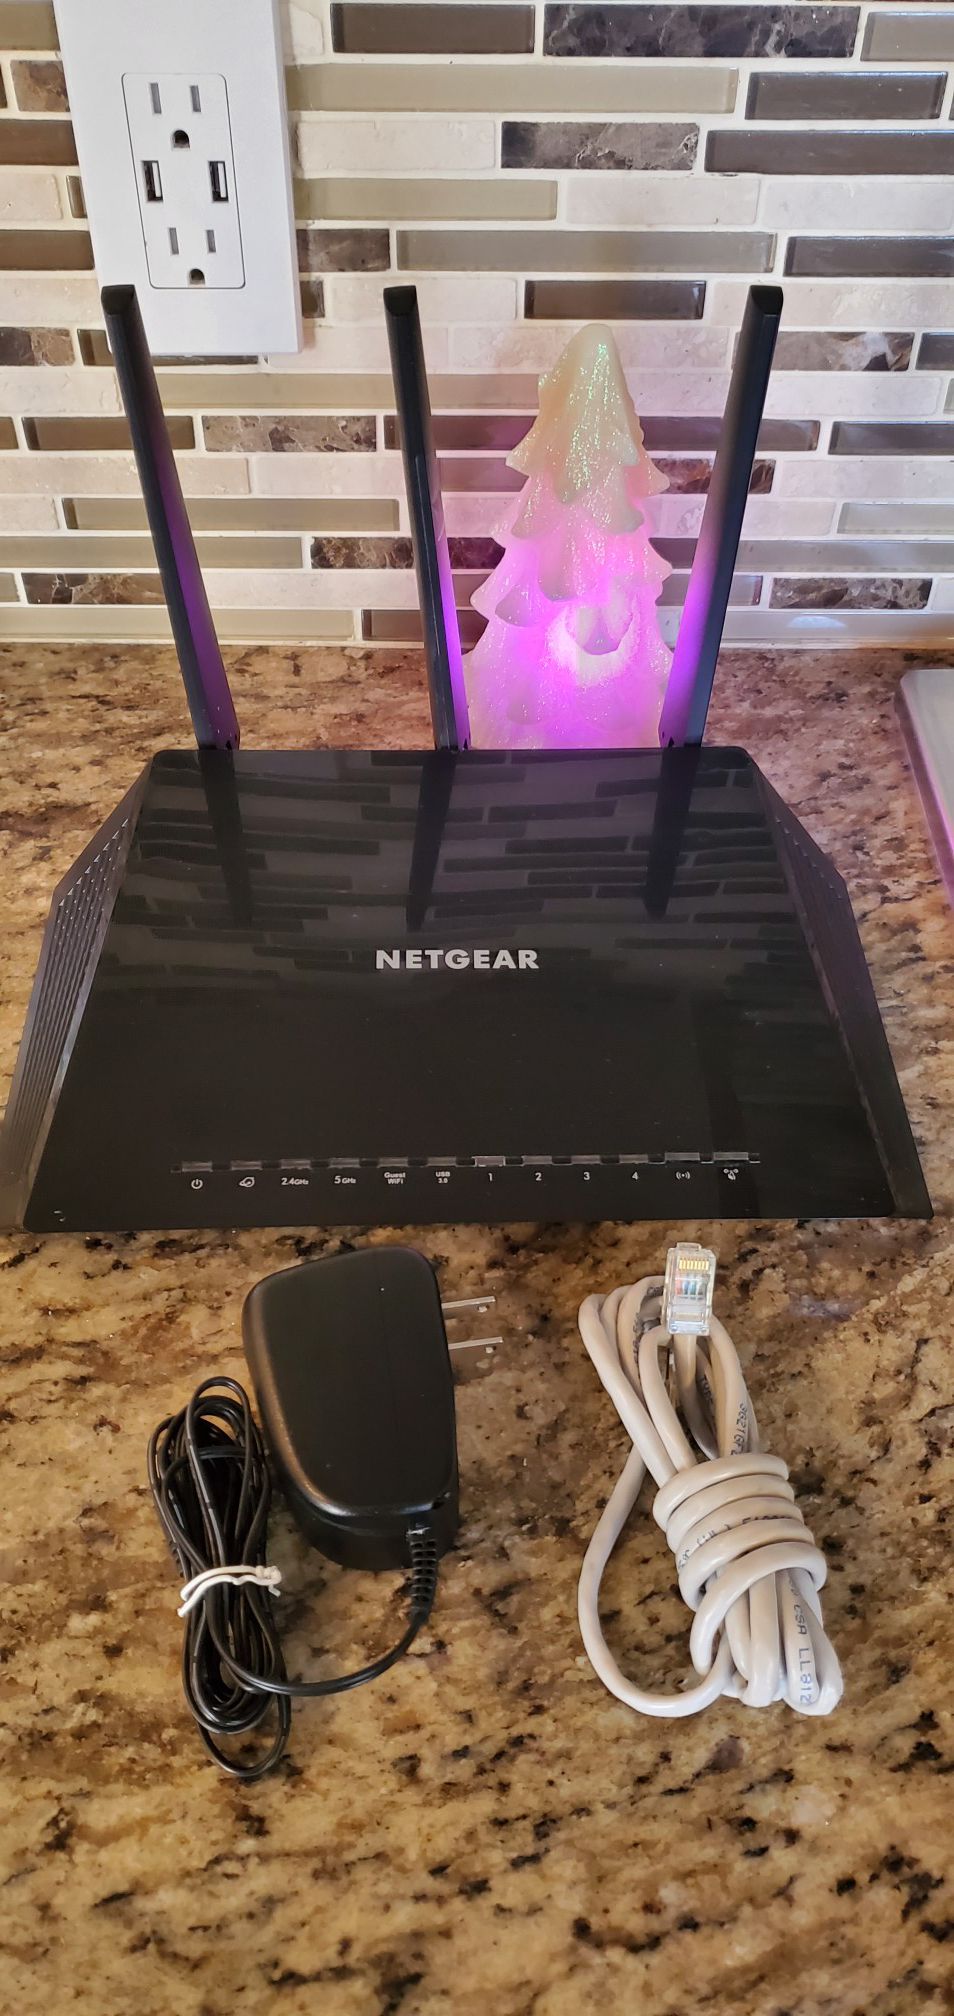 NETGEAR Nighthawk Smart WiFi Router (R6700 v2) - AC1750